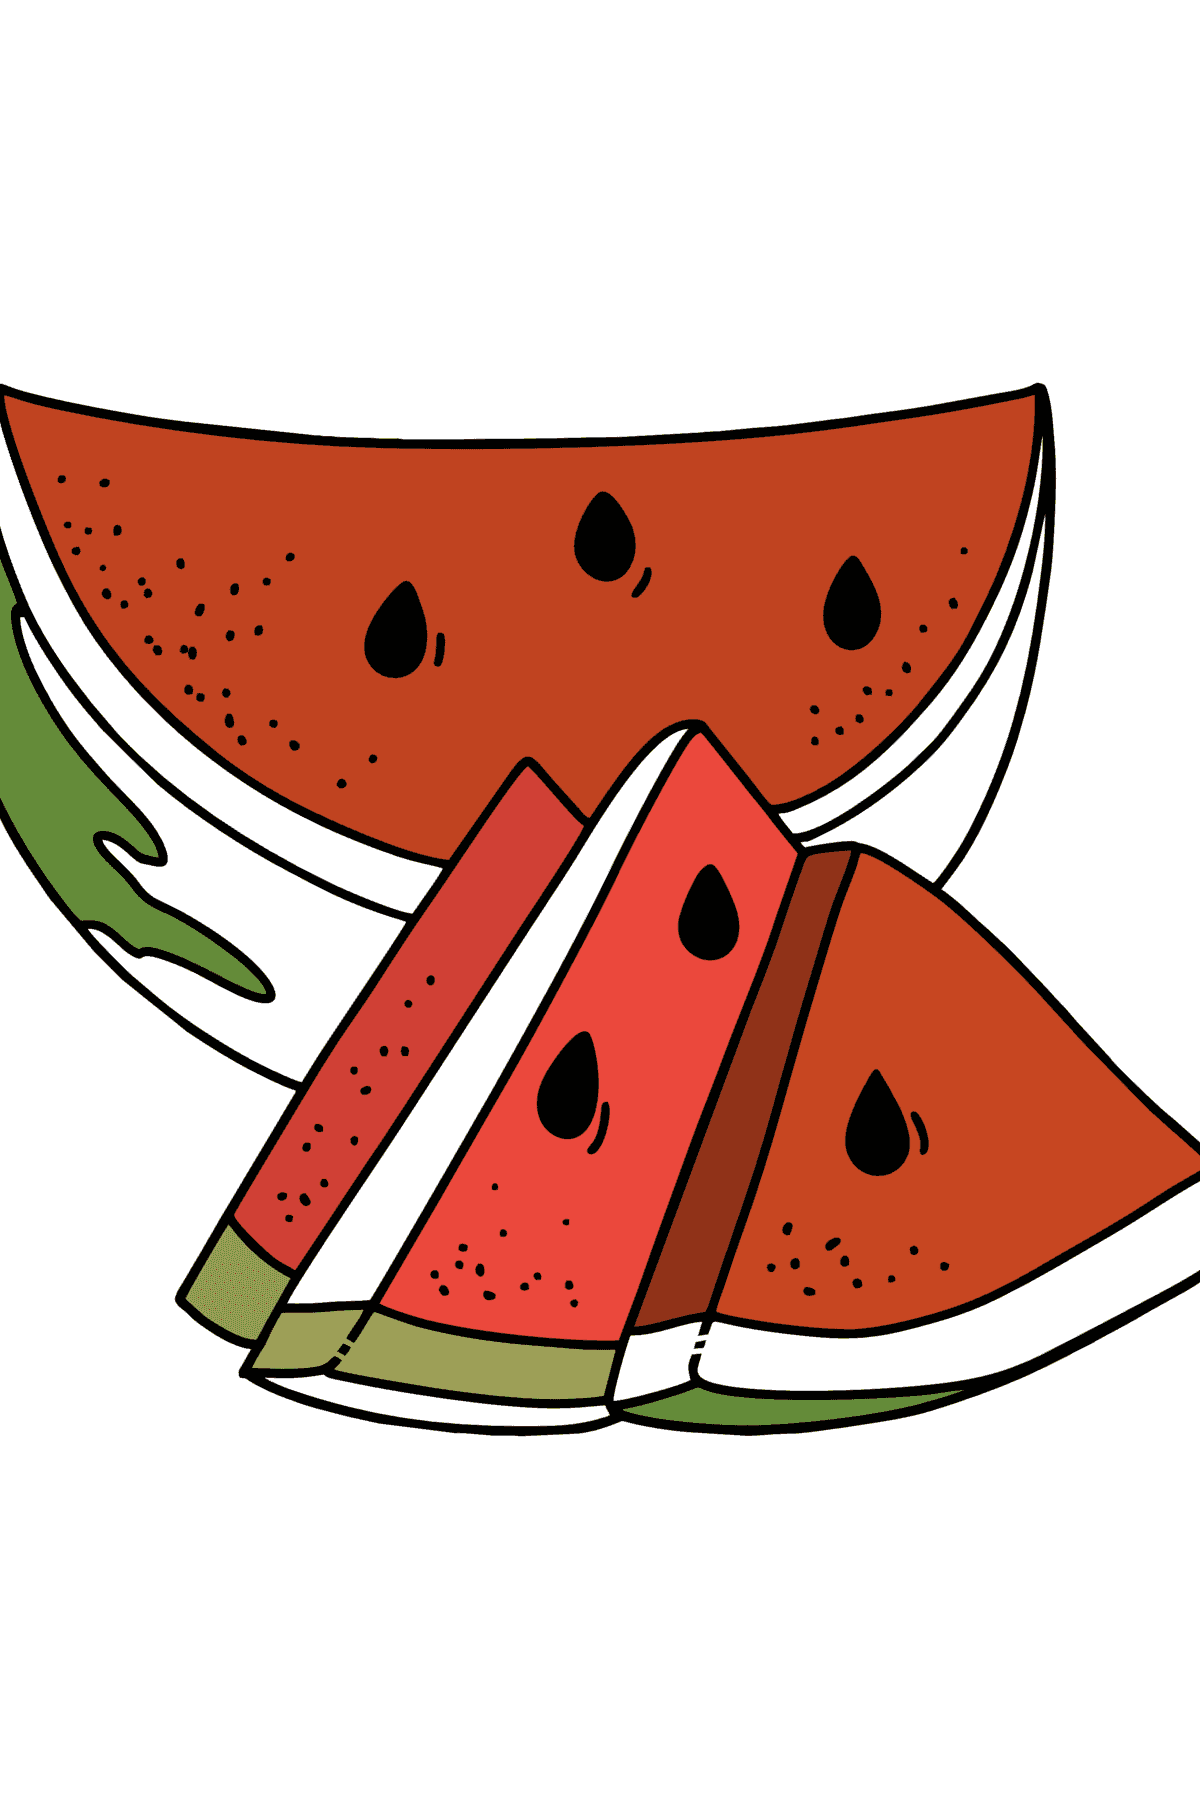 Ausmalbild Sommer - Saftige Wassermelone - Malvorlagen für Kinder